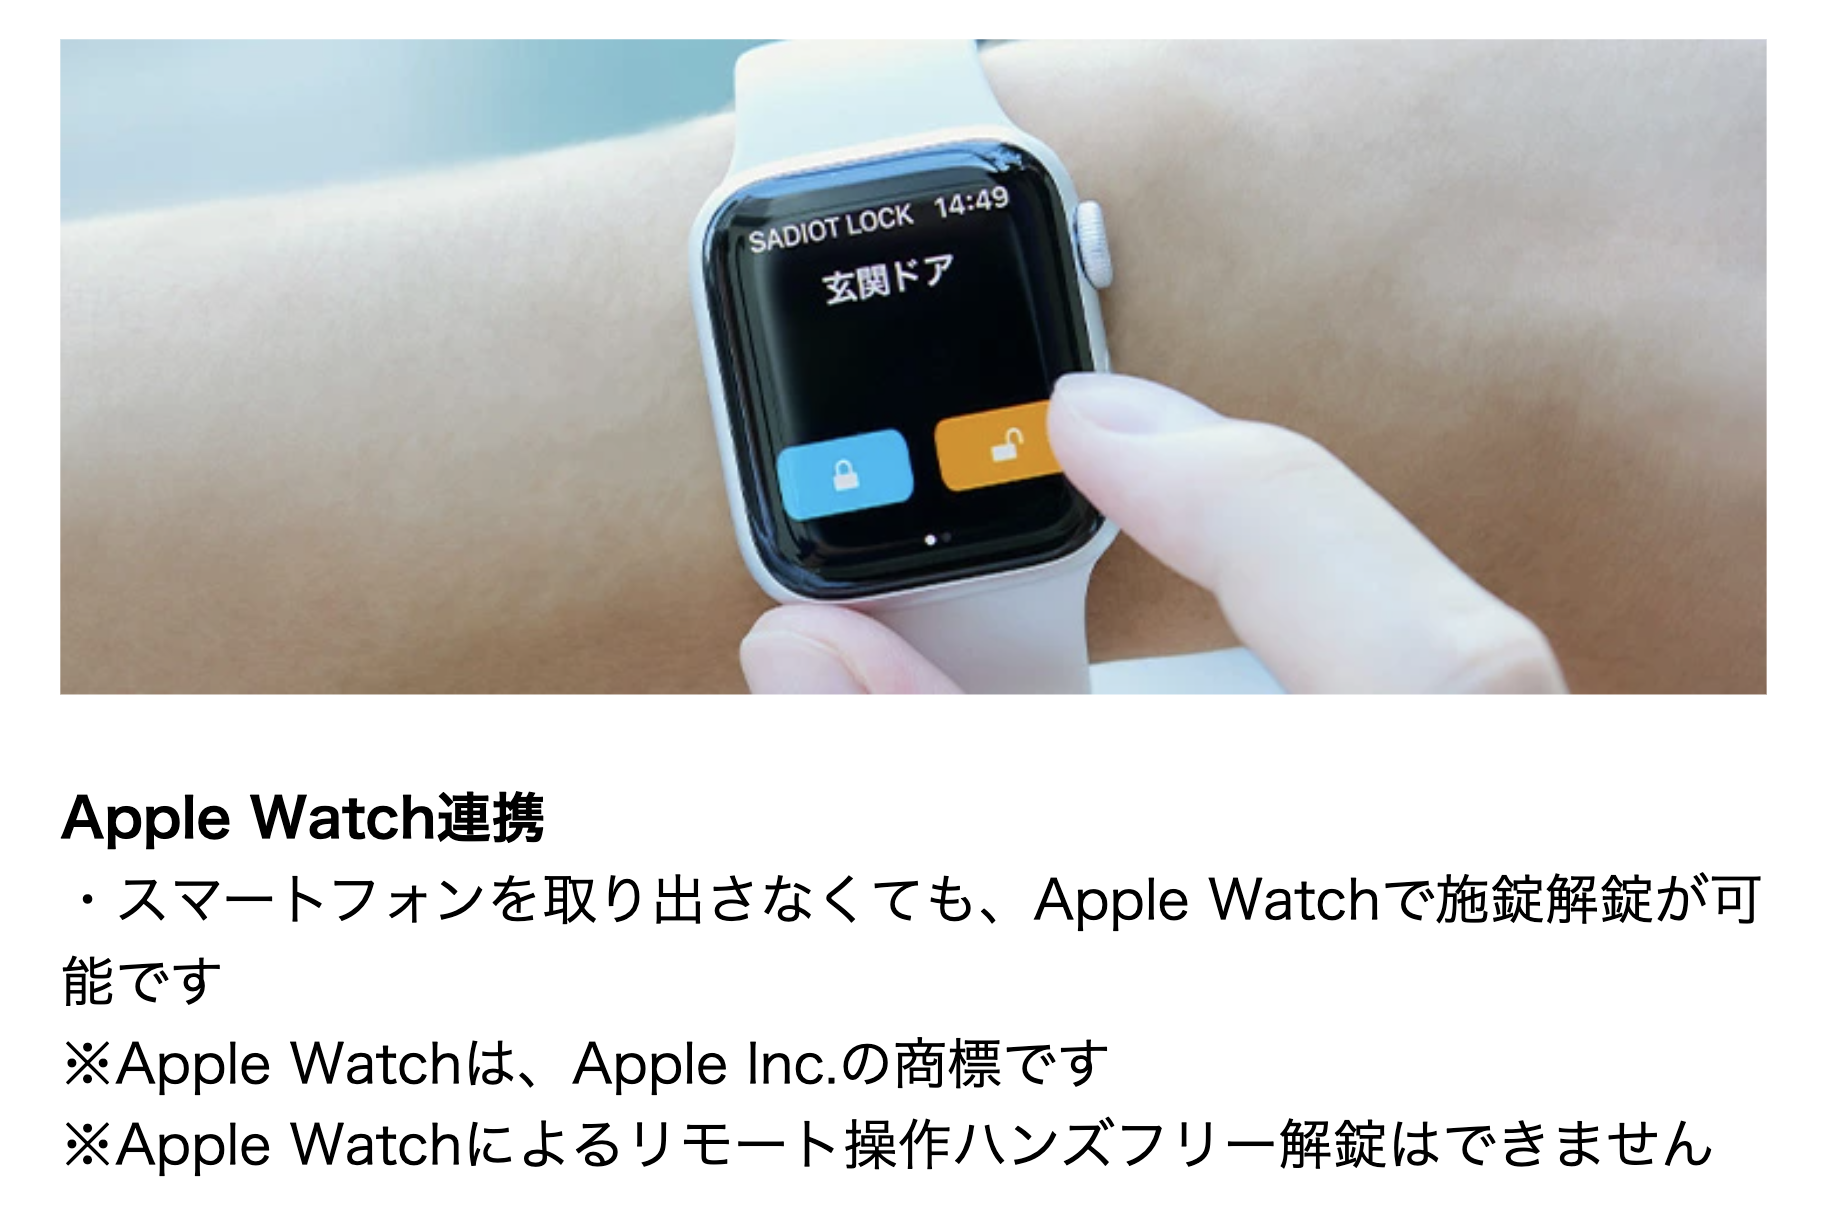 Apple Watchal・スマートフォンを取り出さなくても、Apple Watchで施錠解錠が可能です